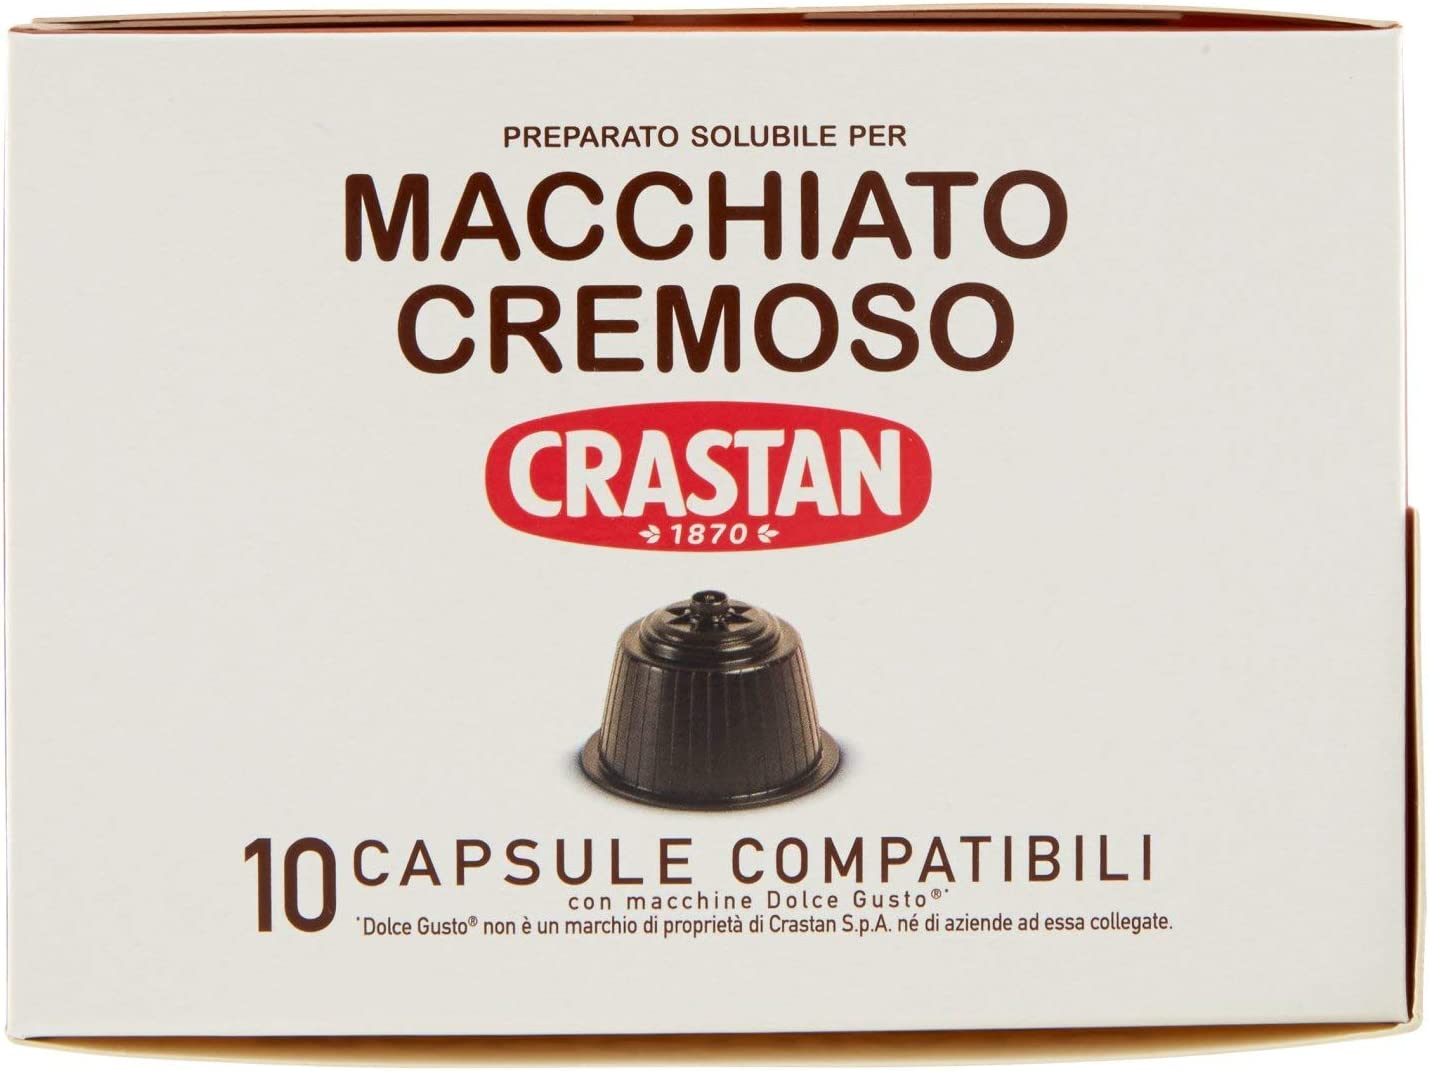 Crastan Capsule Compatibili Dolce Gusto - Macchiato Cremoso  10 capsule